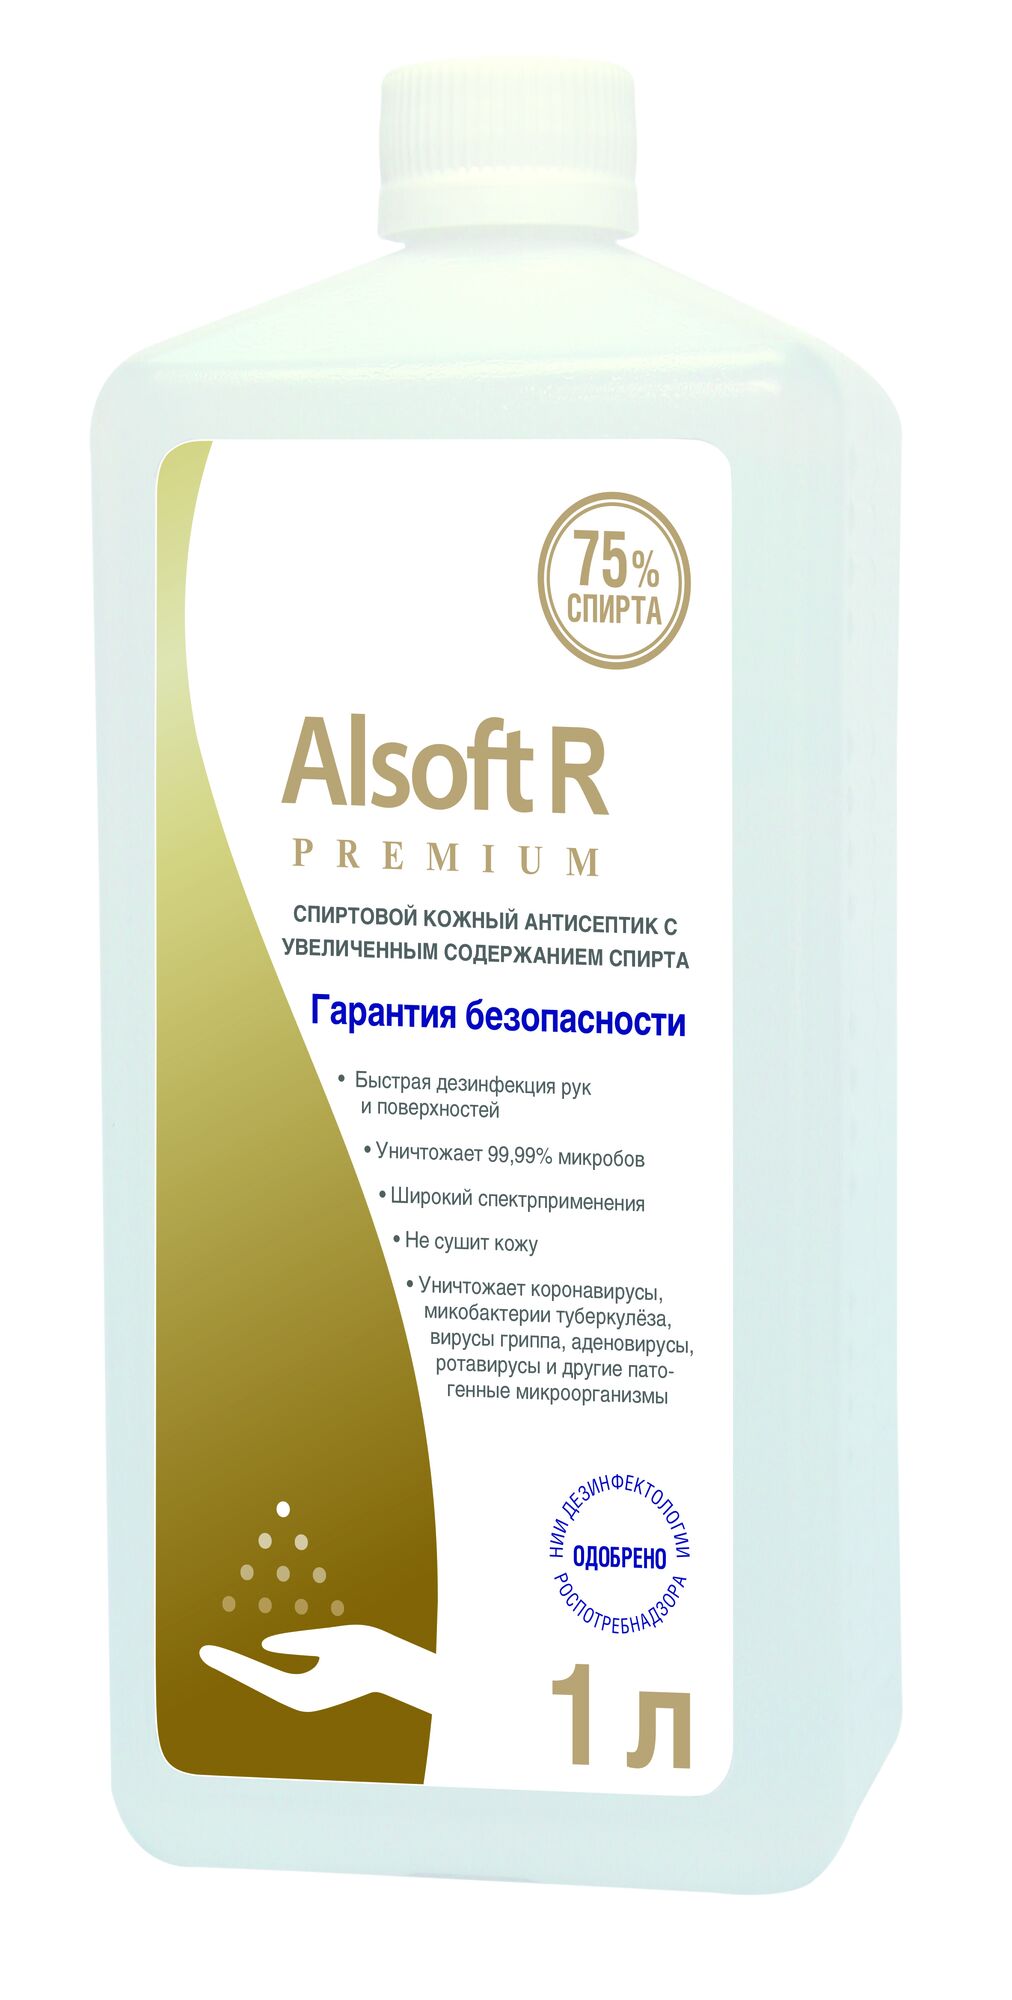 Alsoft R Premium 14841 Антисептик для рук 75% 1 л. Еврофлакон